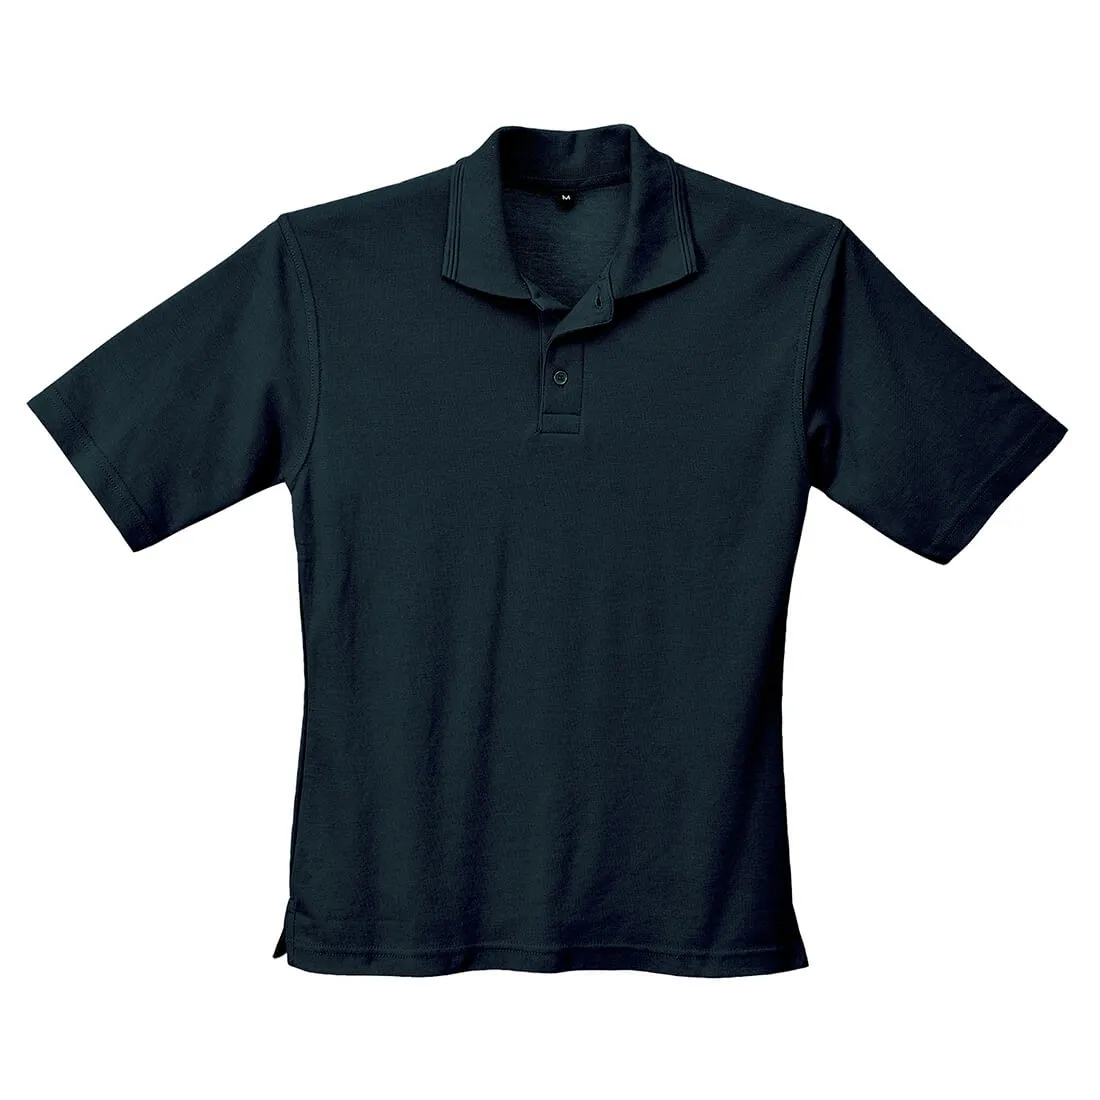 Portwest Ladies Naples Polo Shirt - Black, S